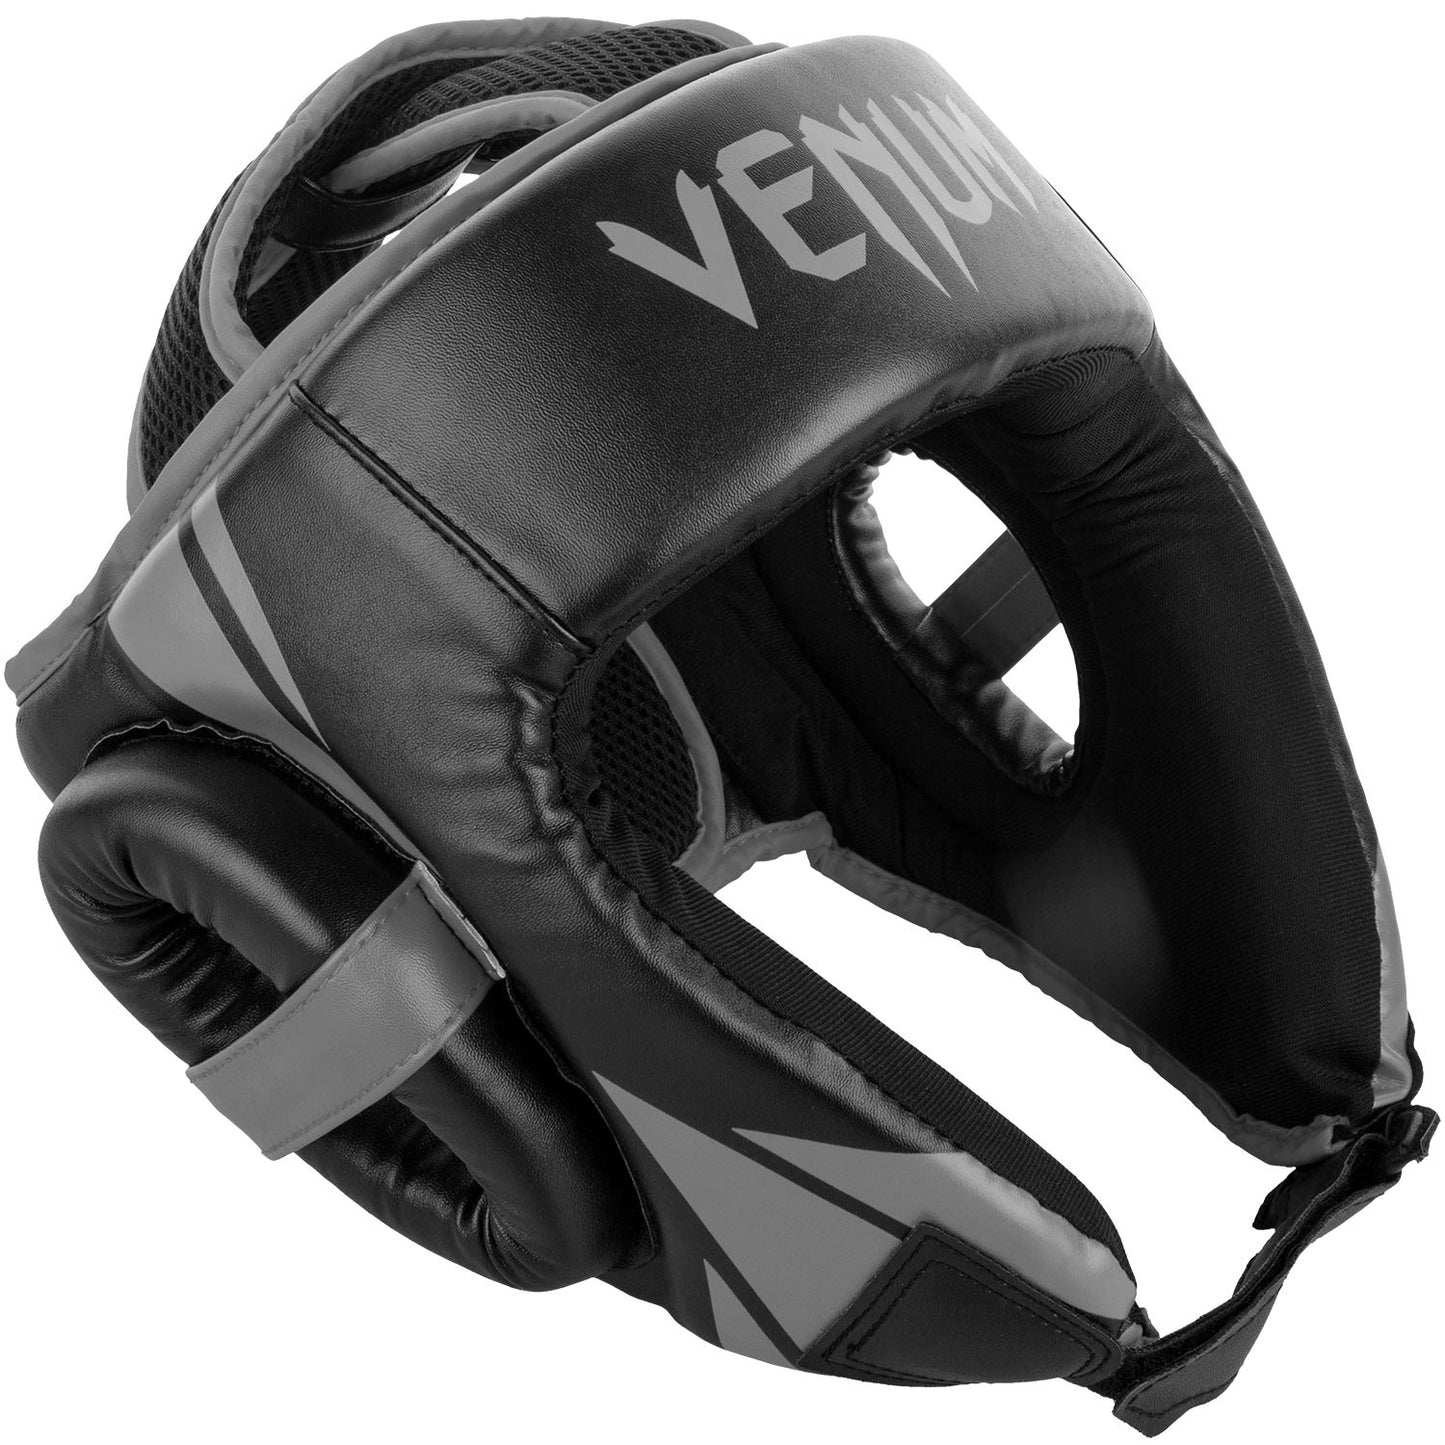 Venum Challenger Open Face Kopfschutz